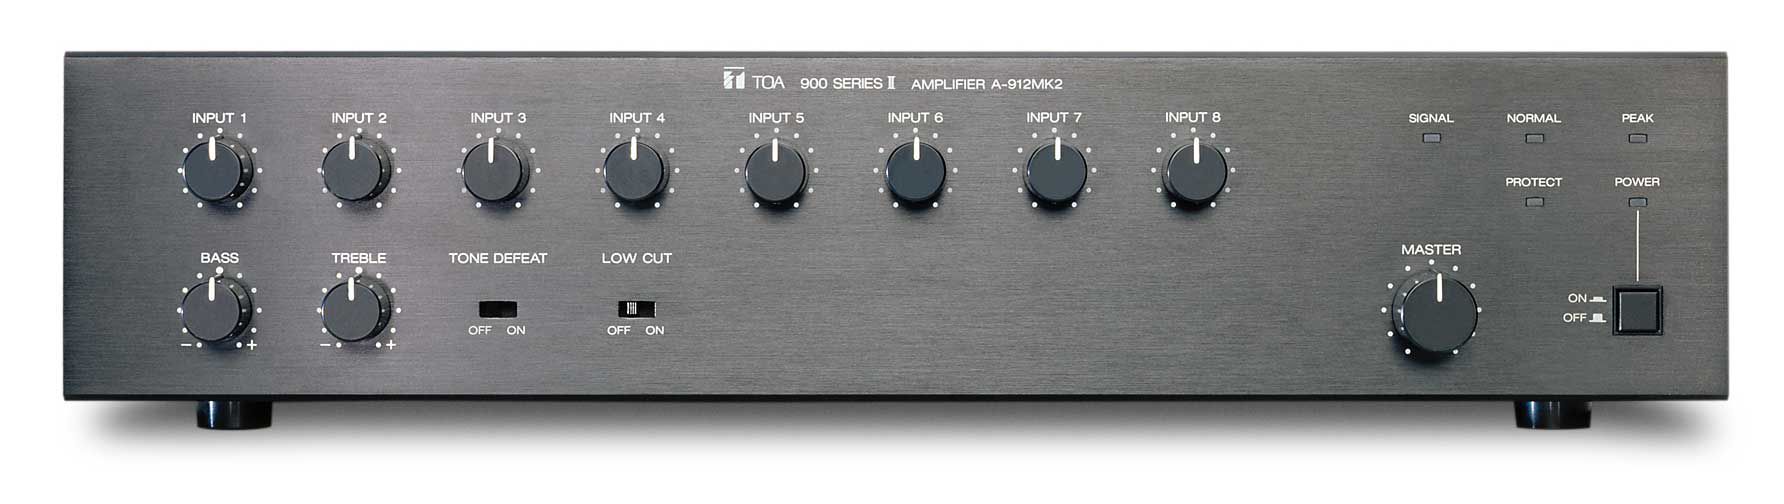 900 Series Amplifiers